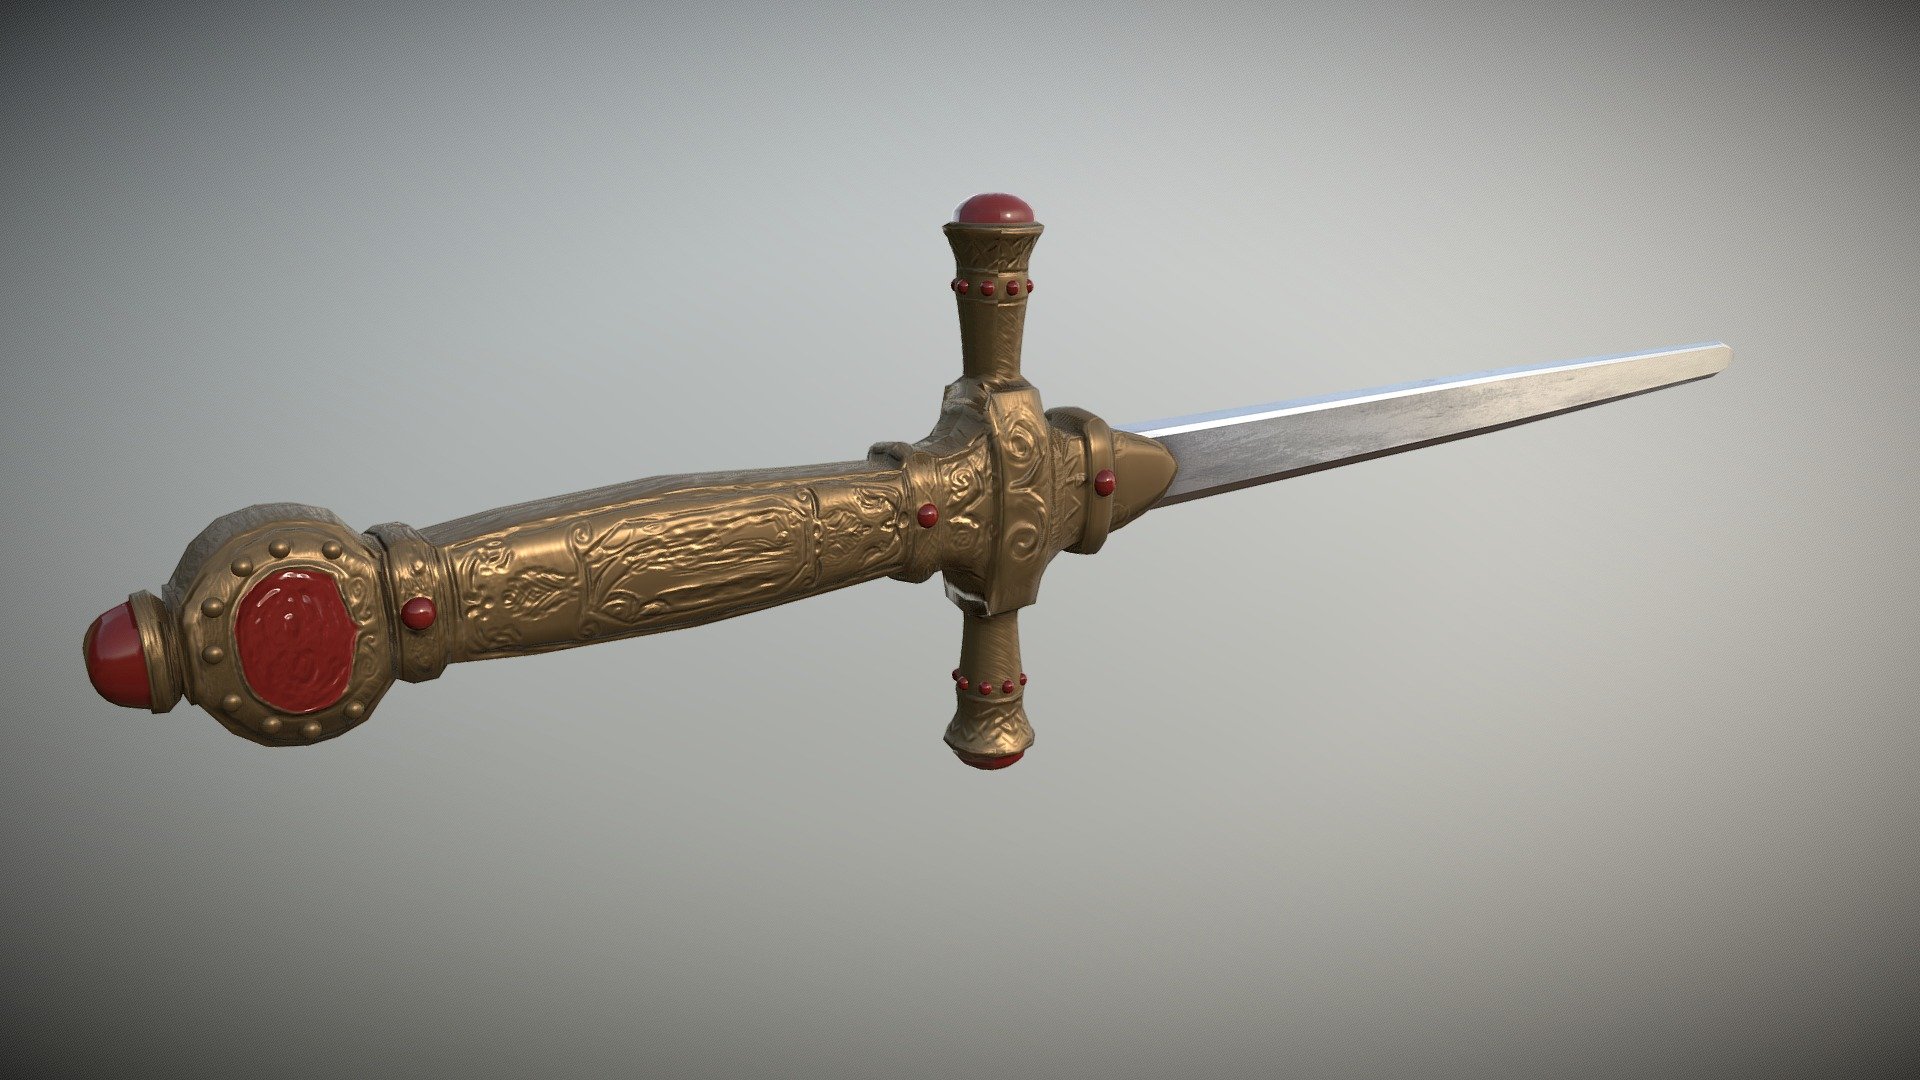 Godric Gryffindor sword, fanart work optimized for real time 3d model